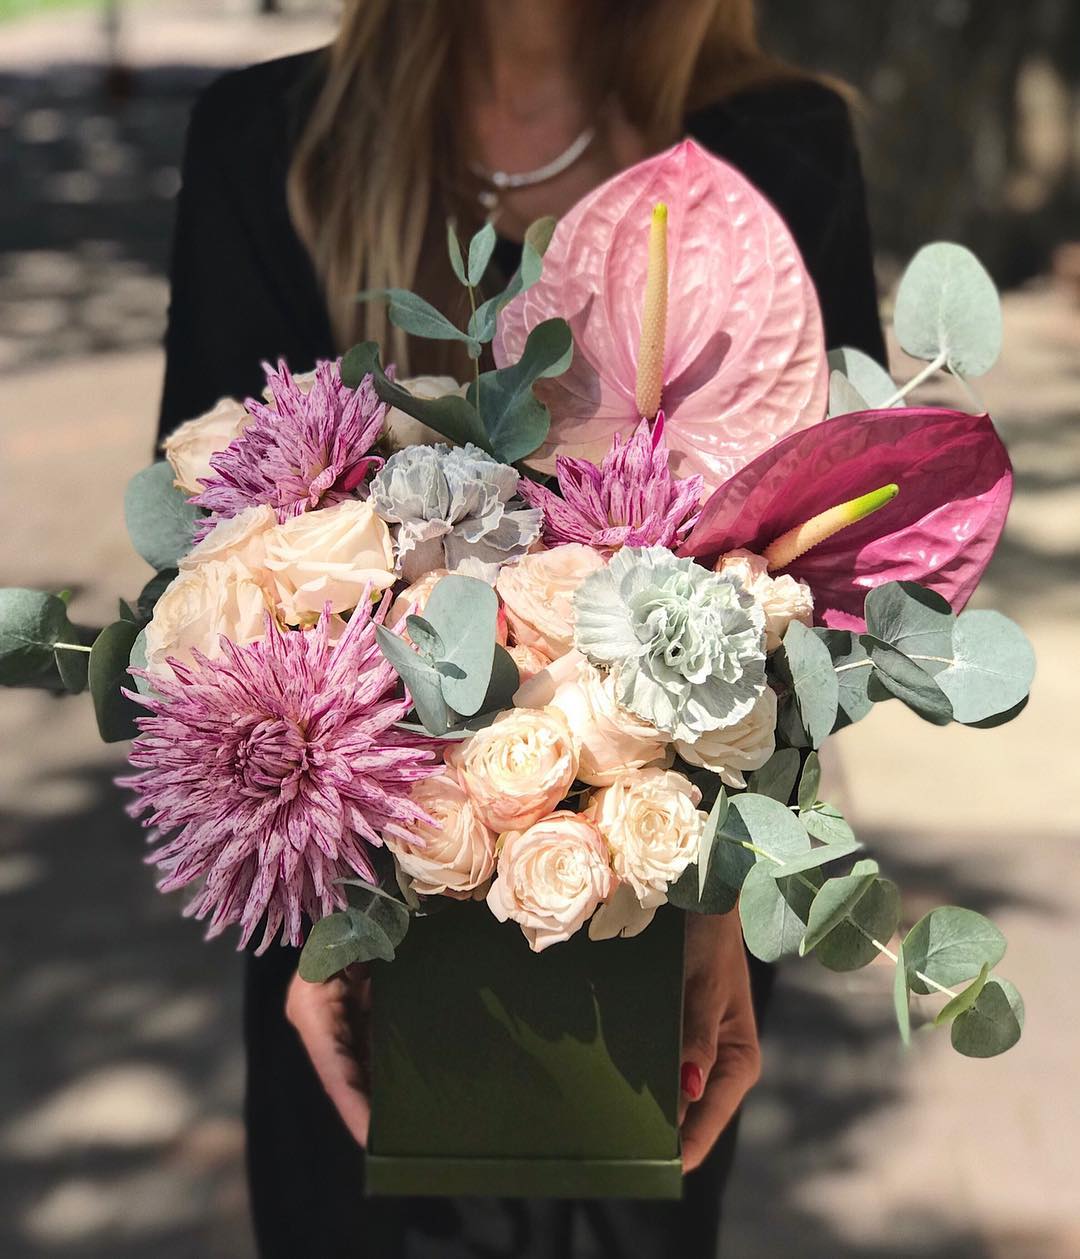 FloraExpress • Доставка цветов - Сегодня намного интереснее получить живые цветы в коробке, нежели обычный банальный букет с большим количеством цветков.

Именно красивые цветы в коробках дарят женщин...